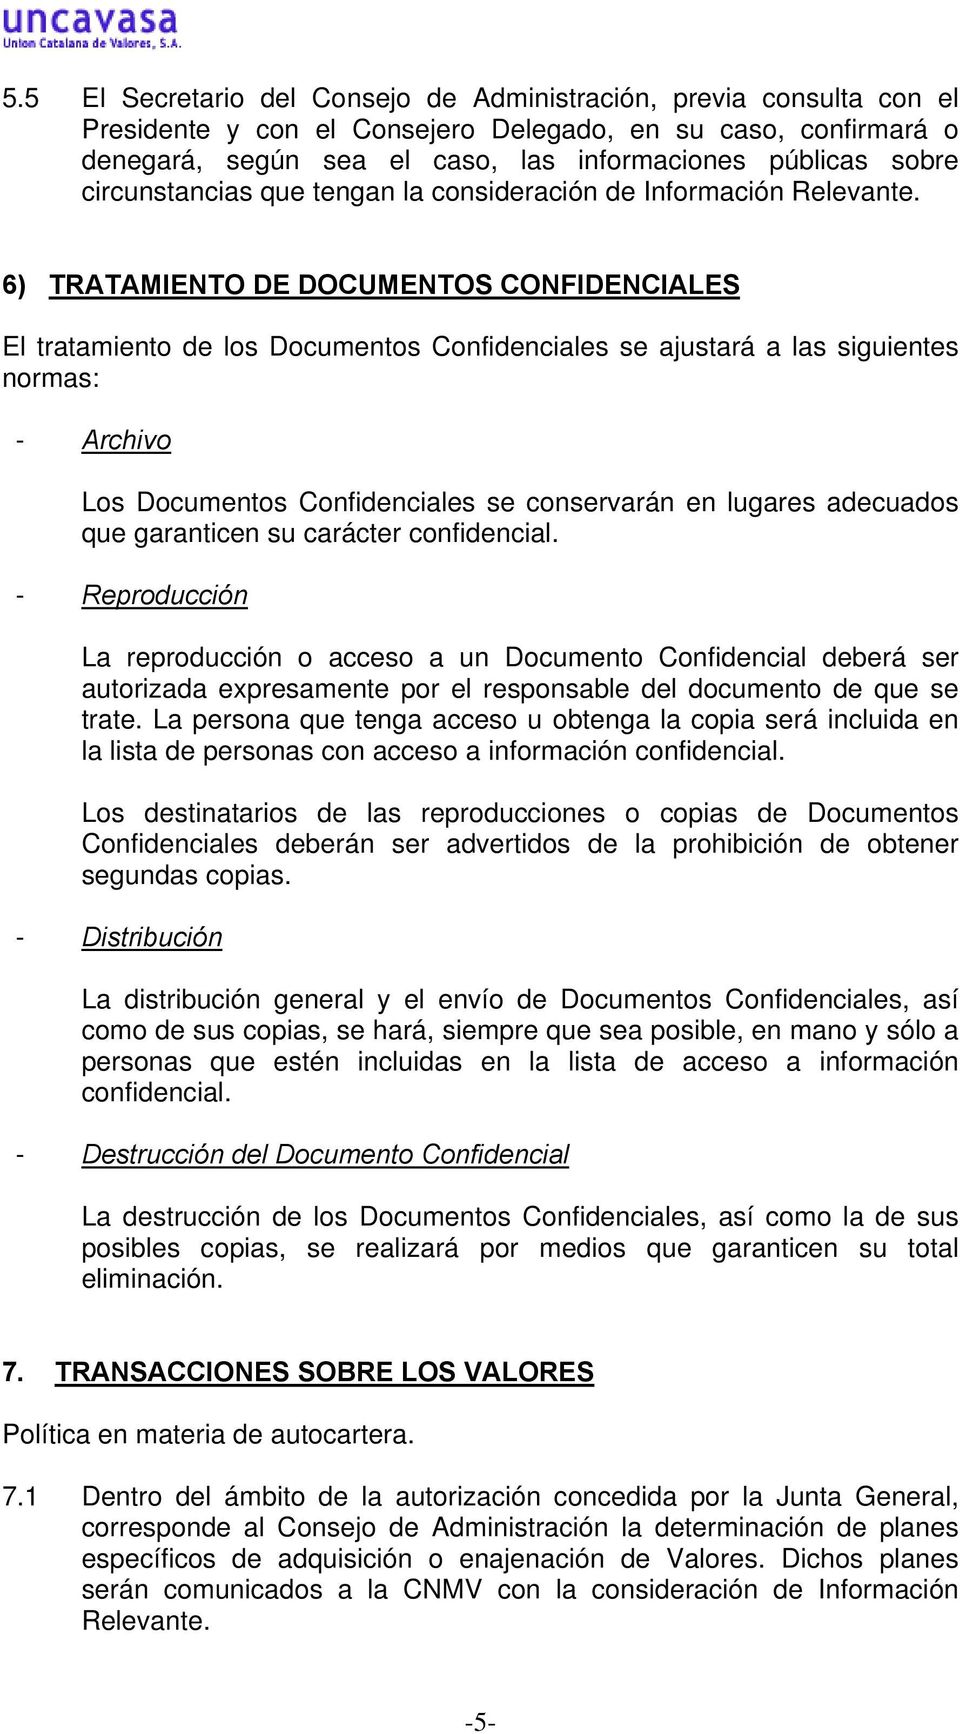 6) TRATAMIENTO DE DOCUMENTOS CONFIDENCIALES El tratamiento de los Documentos Confidenciales se ajustará a las siguientes normas: - Archivo Los Documentos Confidenciales se conservarán en lugares